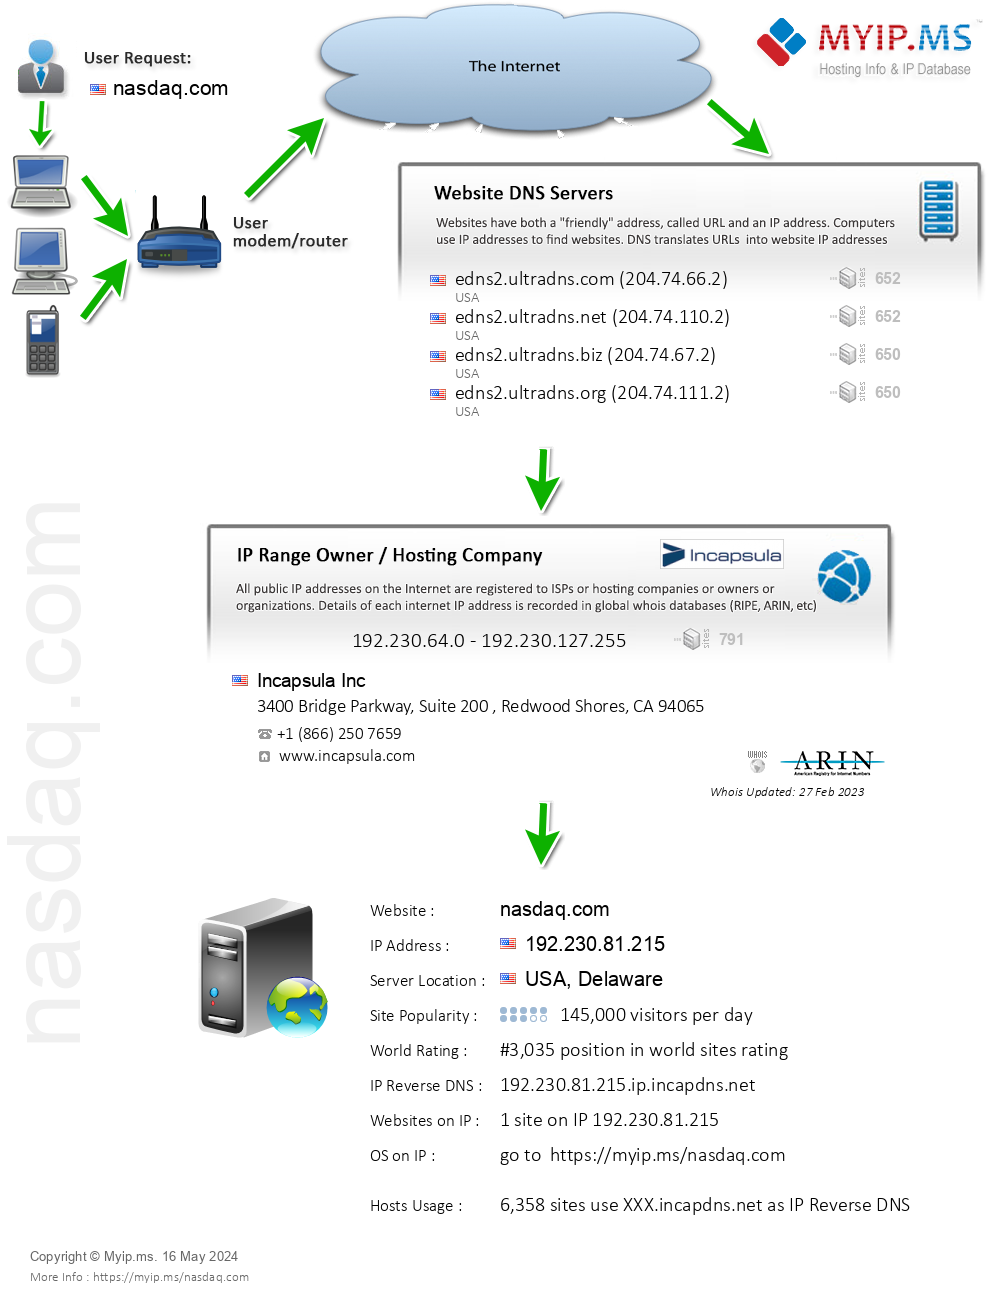 Nasdaq.com - Website Hosting Visual IP Diagram